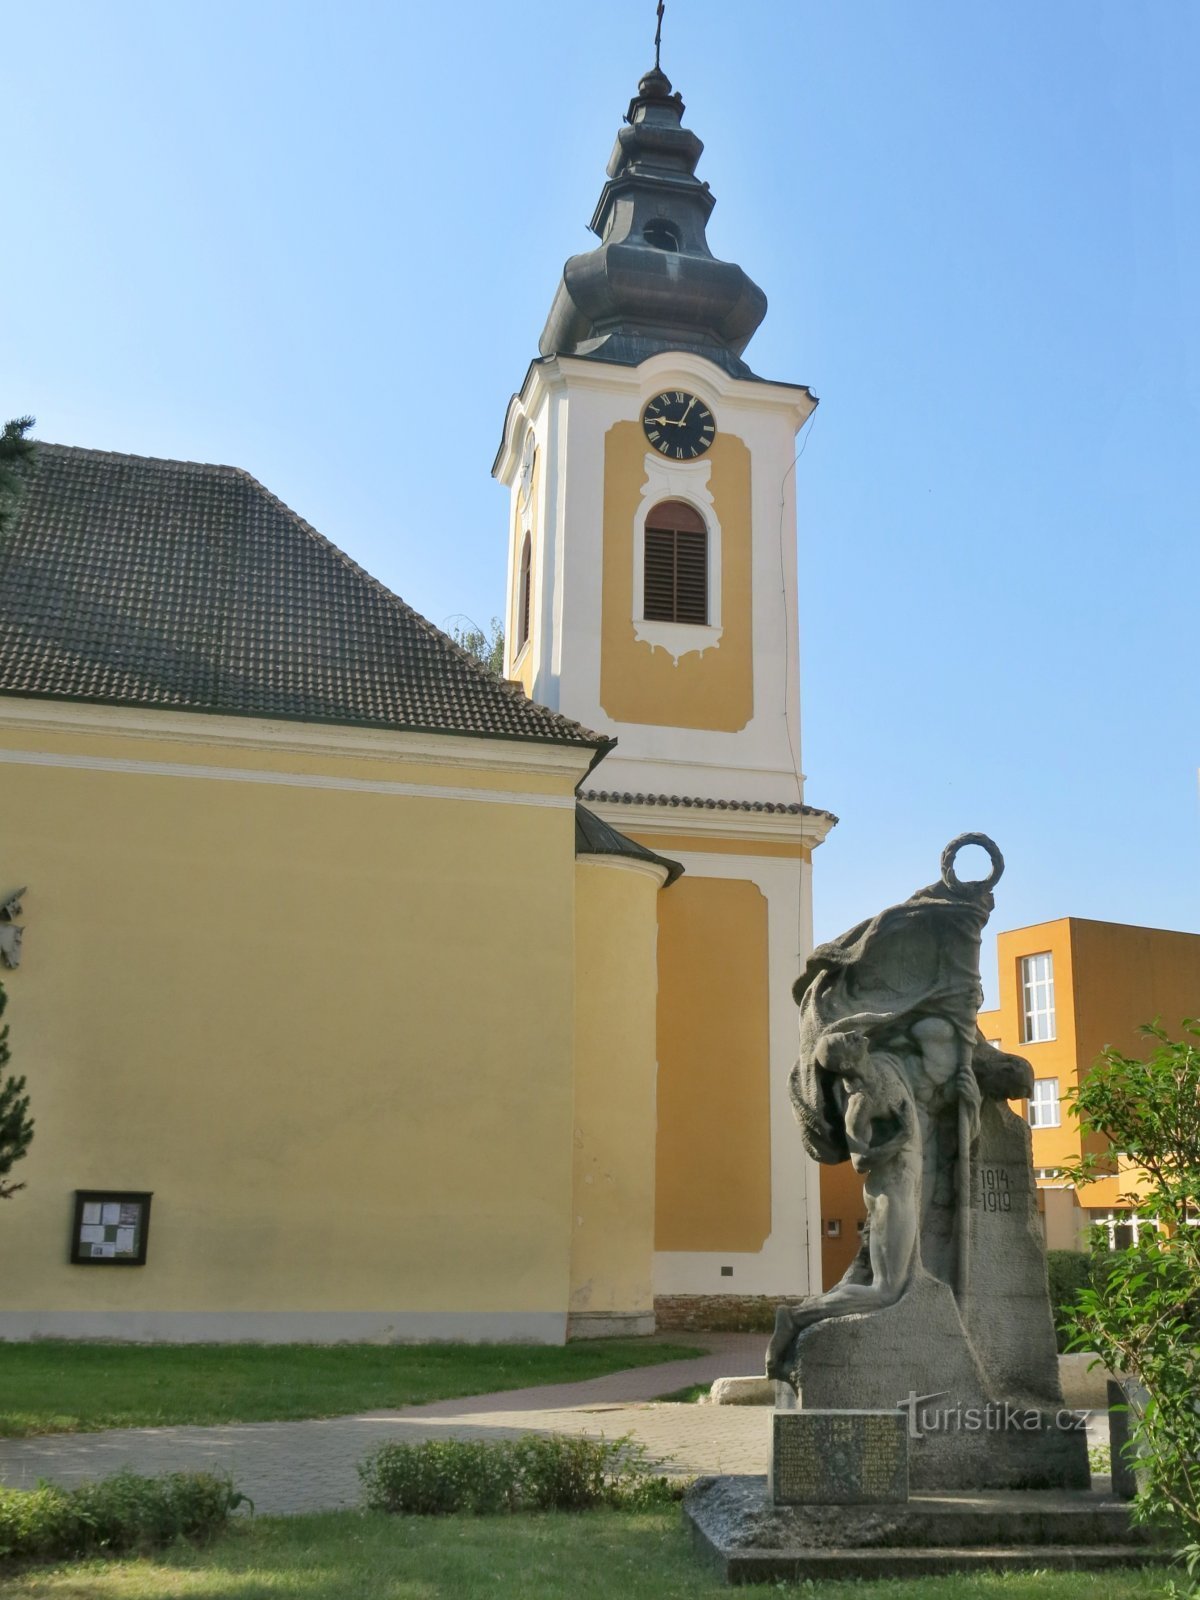 Planá nad Lužnicí - 圣彼得教堂瓦茨拉夫